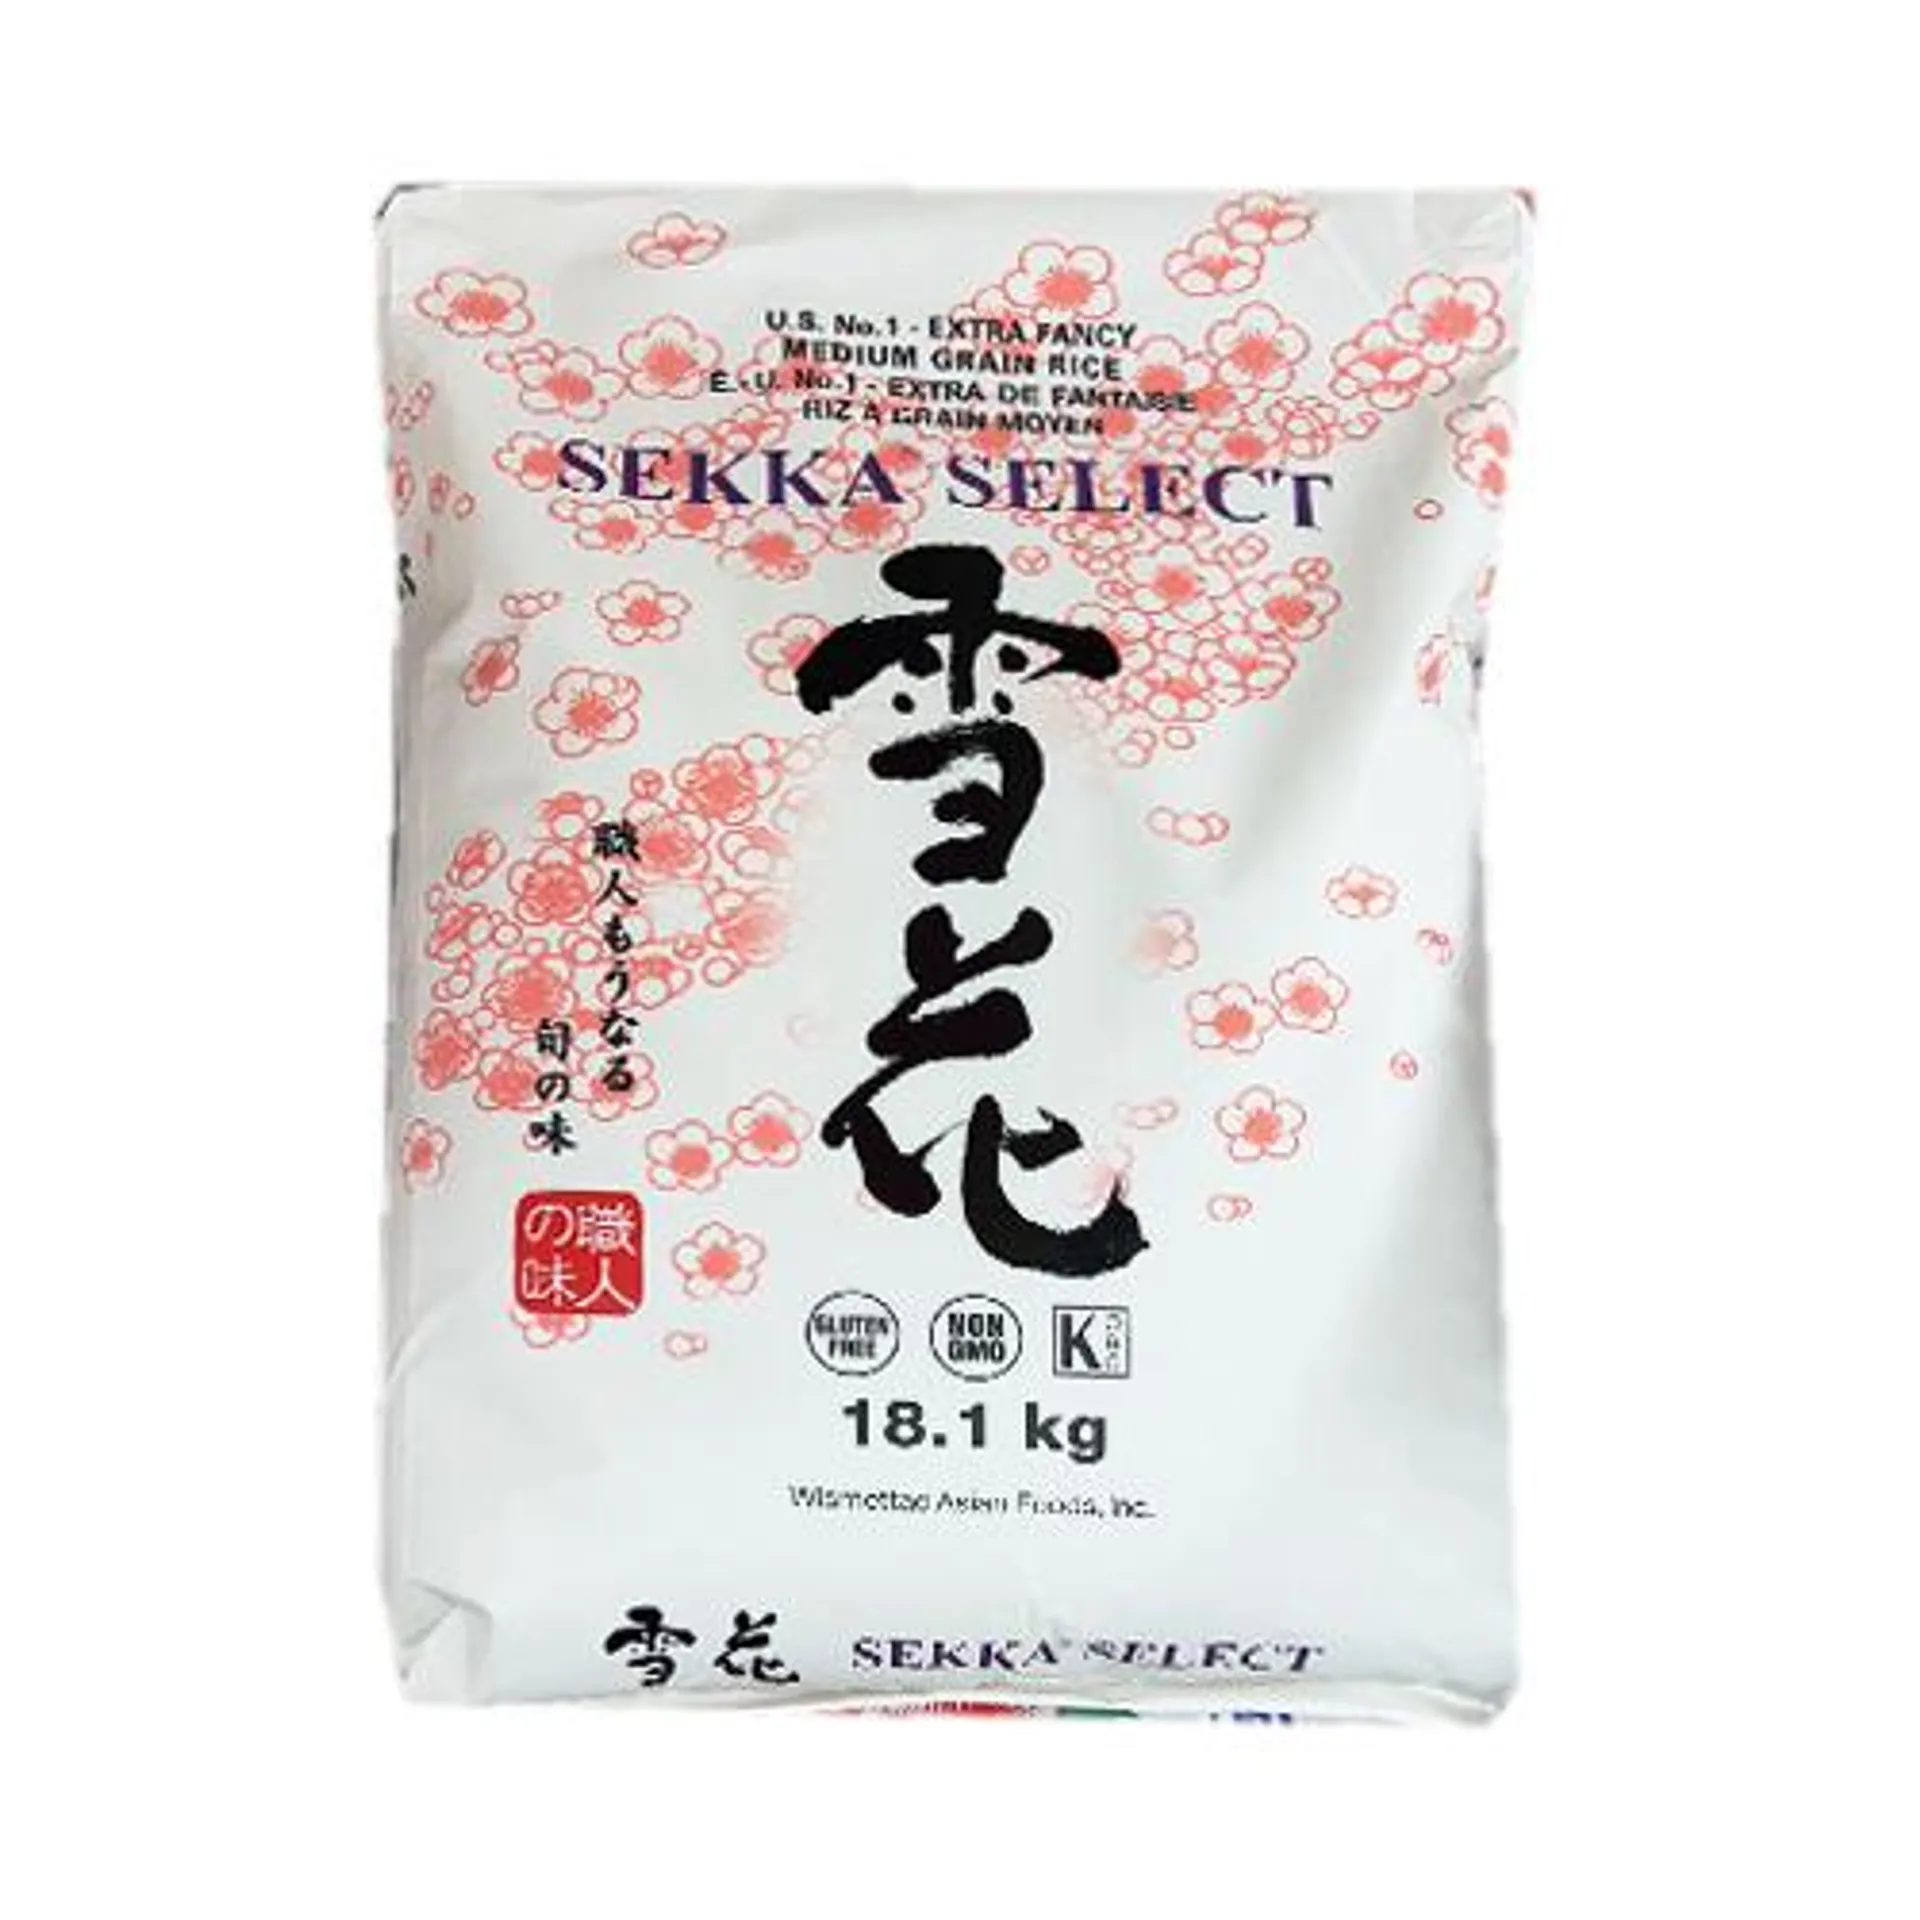 Sekka Select Grain Rice 40lb(limited 1 bag per order)